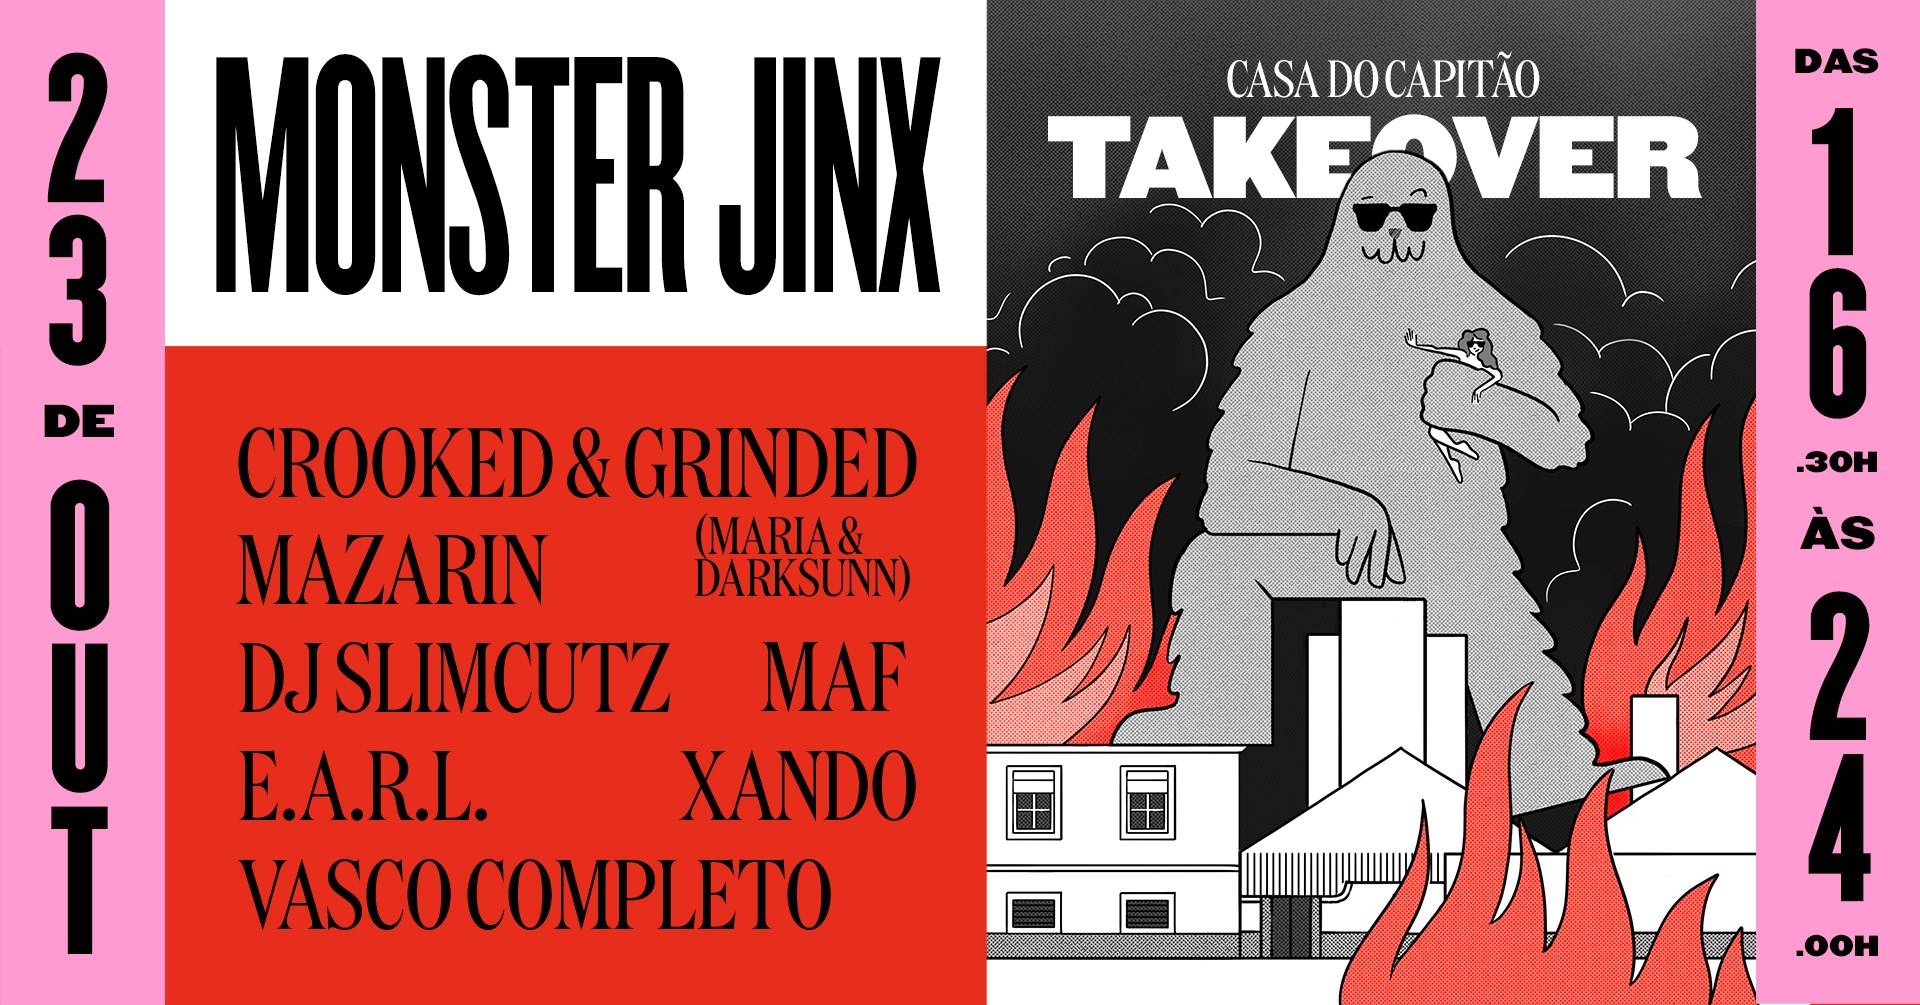 Monster Jinx Takeover / Casa do Capitão